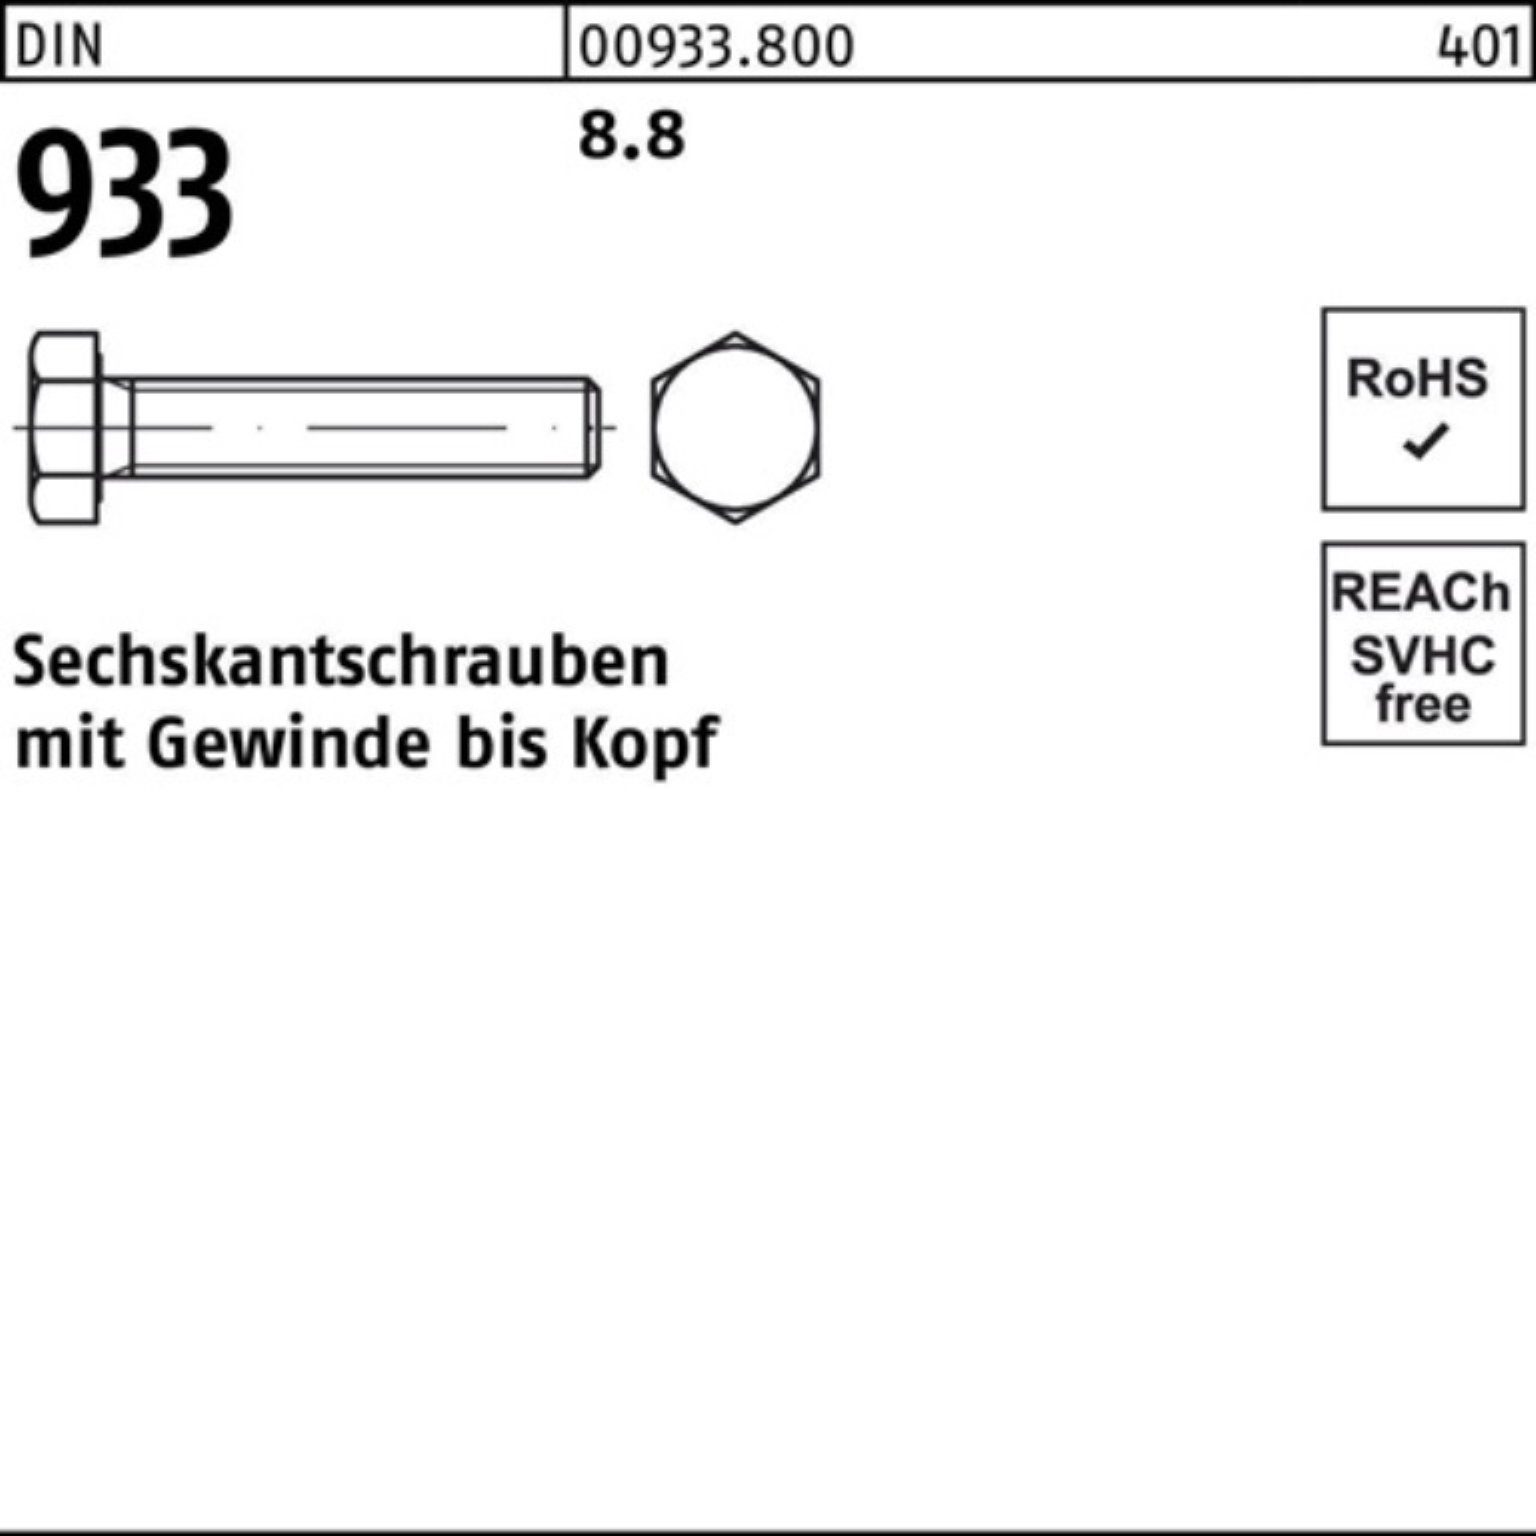 DIN 933 933 1 Sechskantschraube Reyher 8.8 M30x VG 320 DIN Stück Pack 100er Sechskantschraube